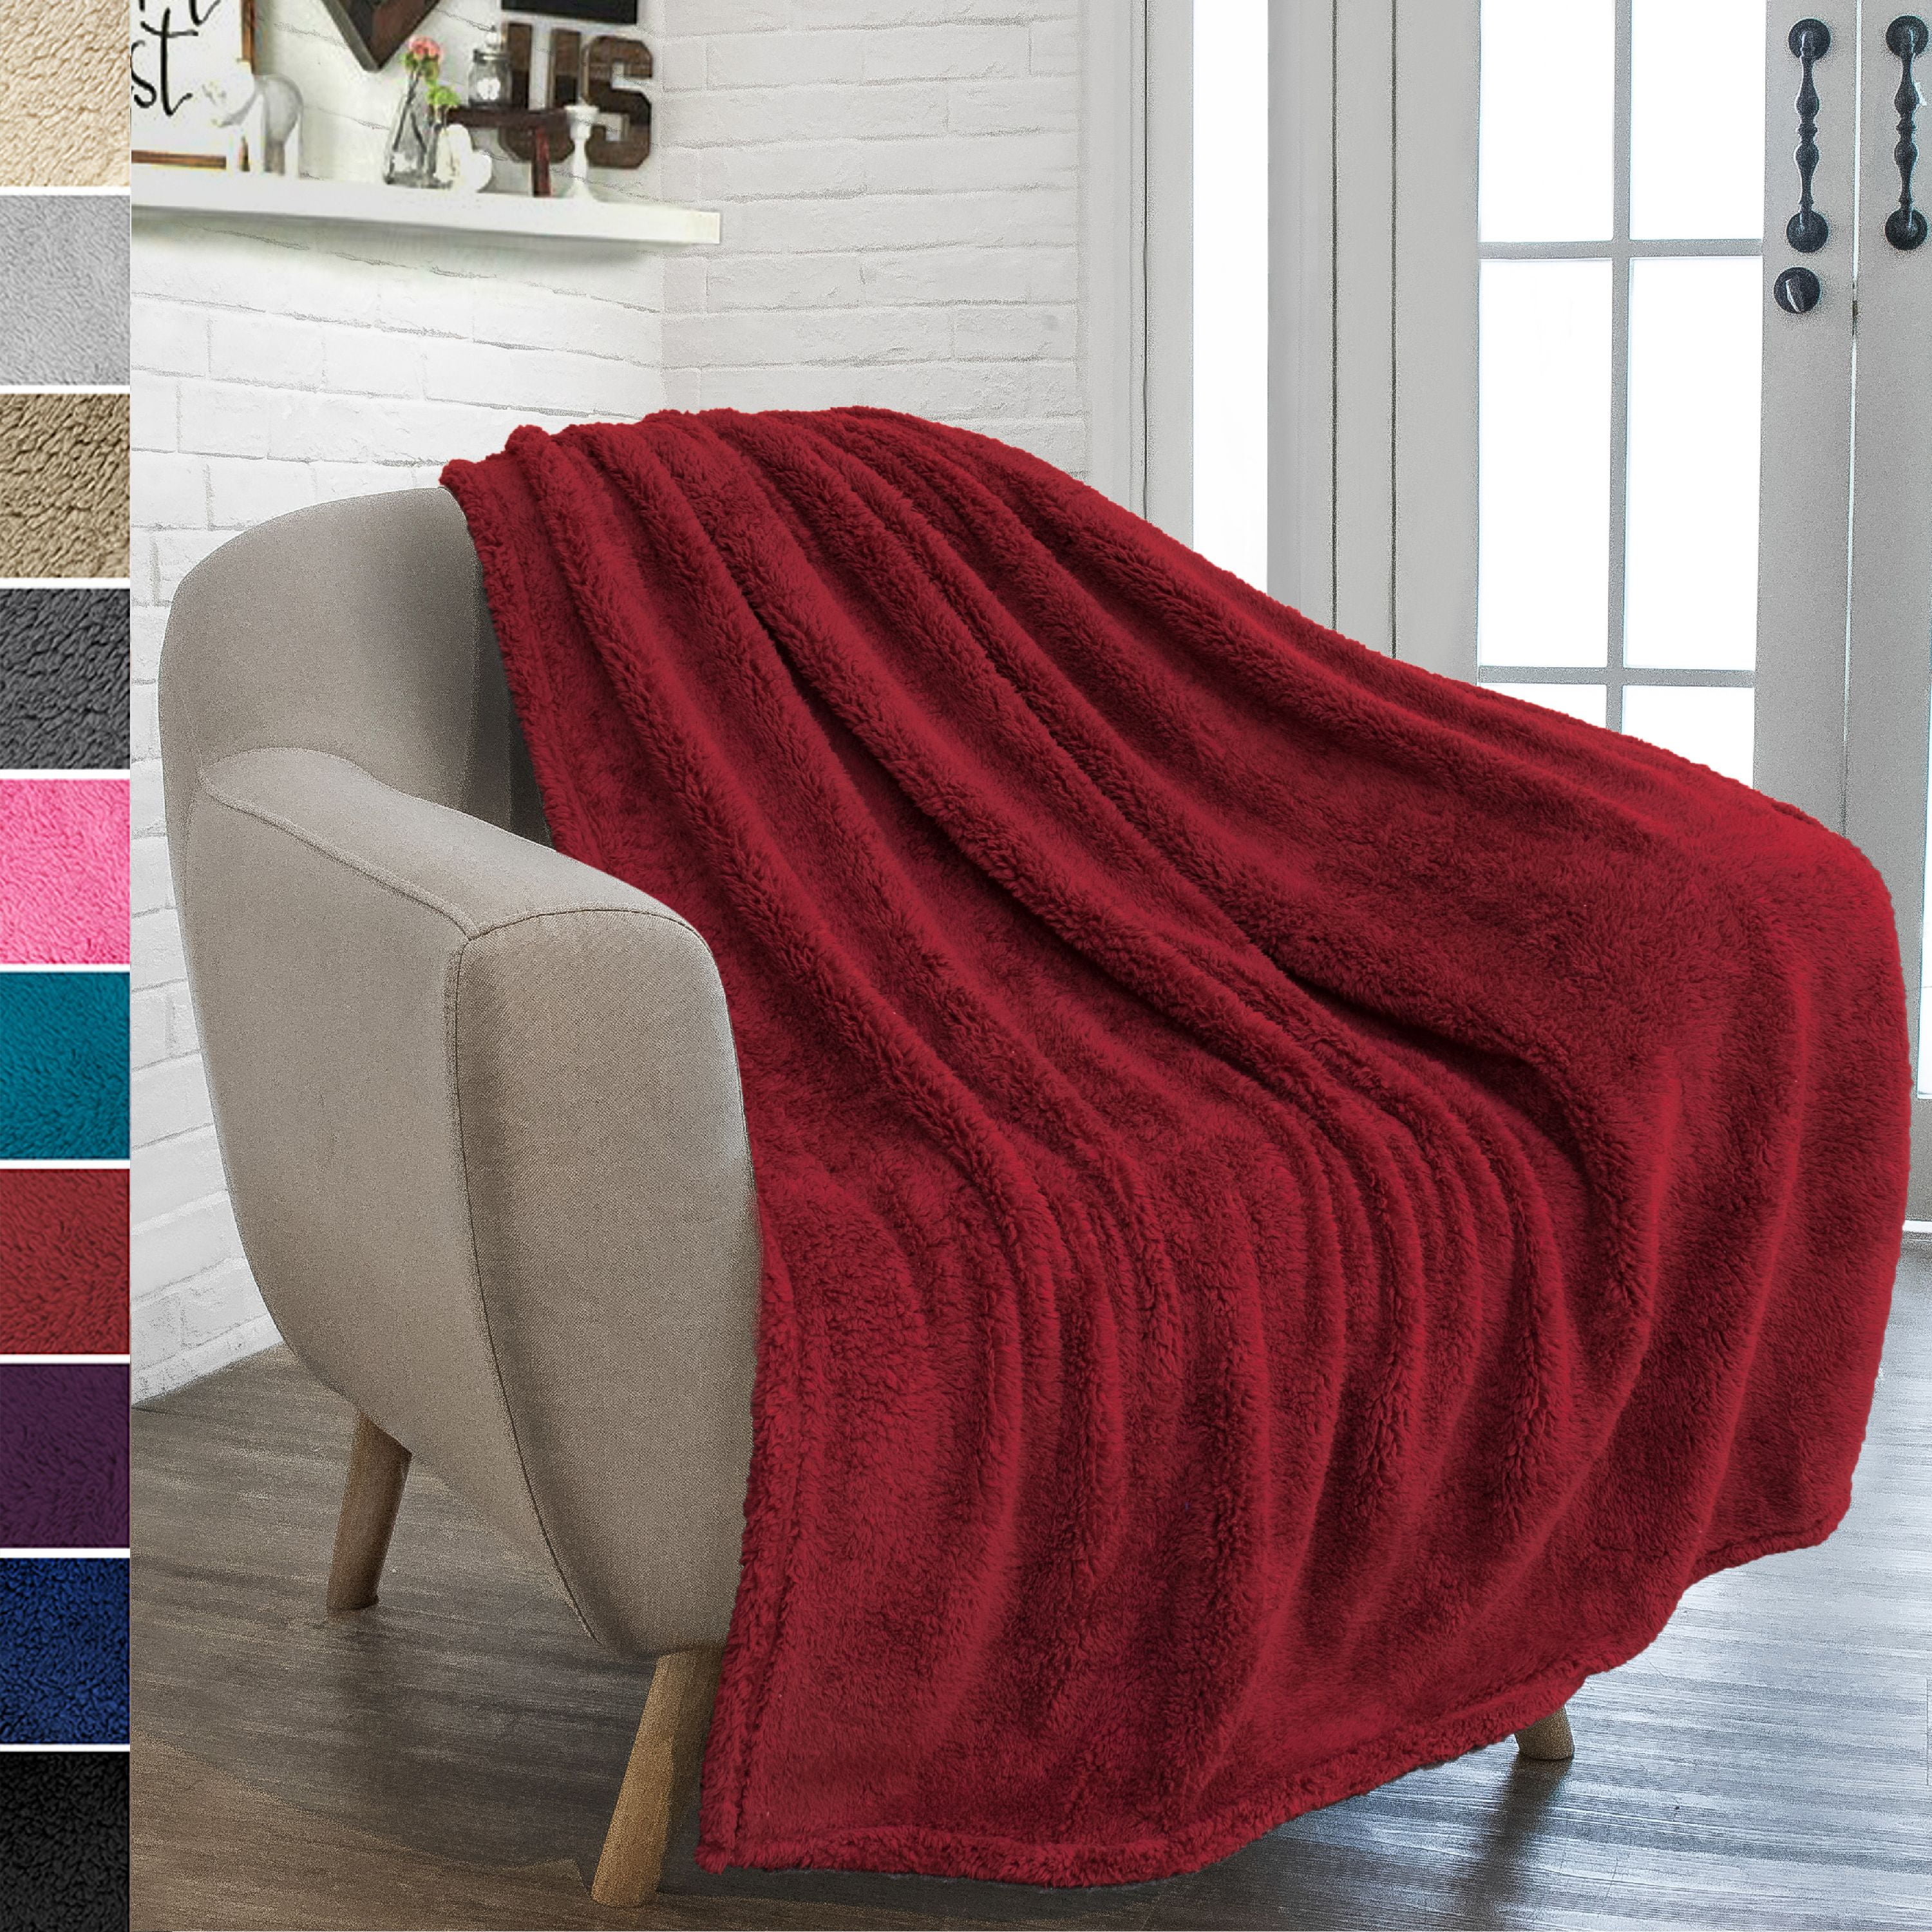 SNAKE SKIN Soft Faux Fur Oversized Twin Luxury Sherpa Throw Blanket 50x70 in 